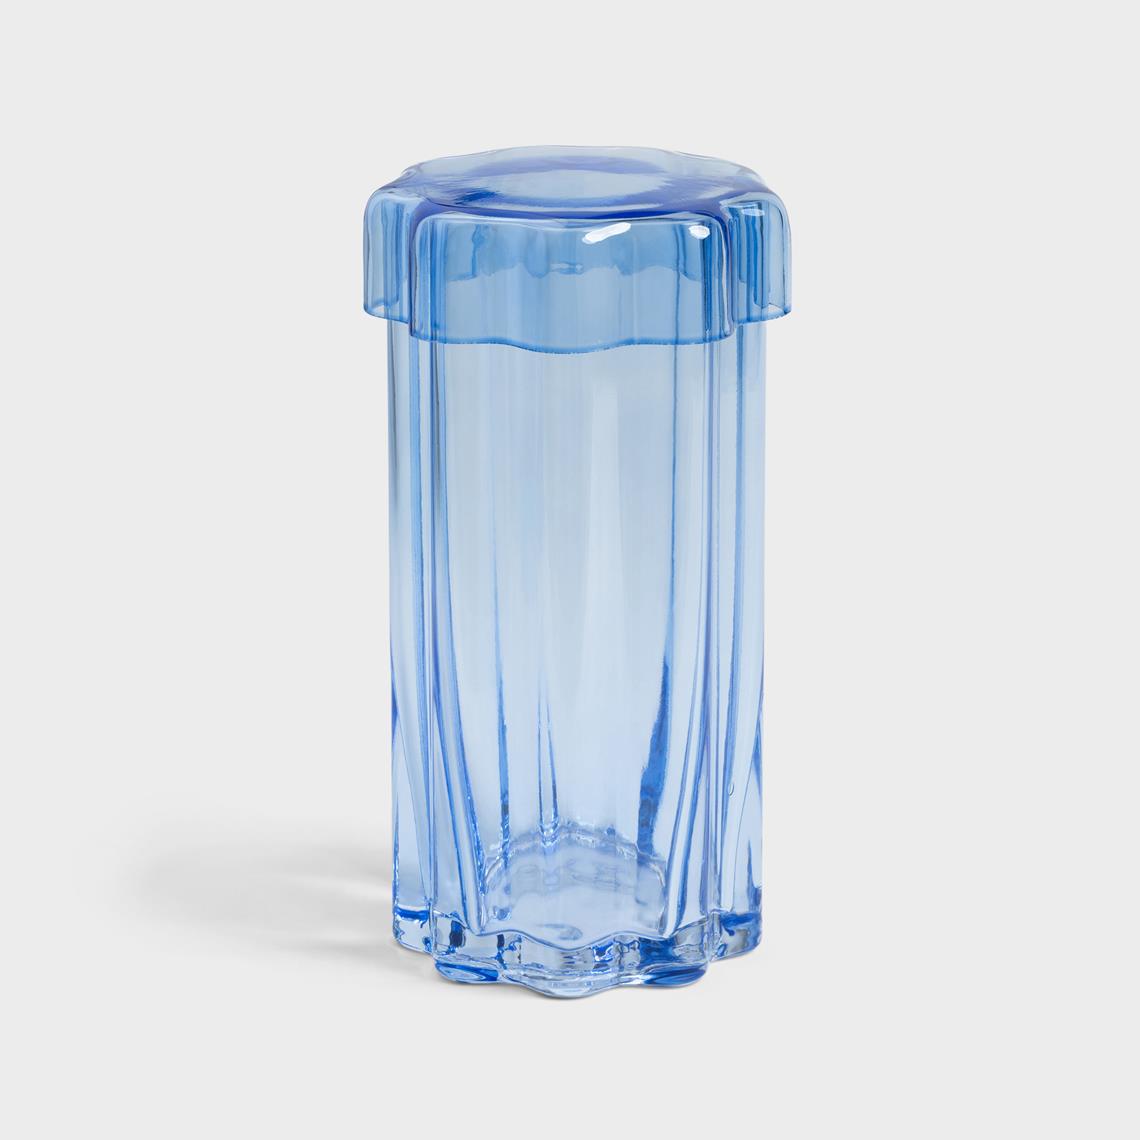 Jar astral blue